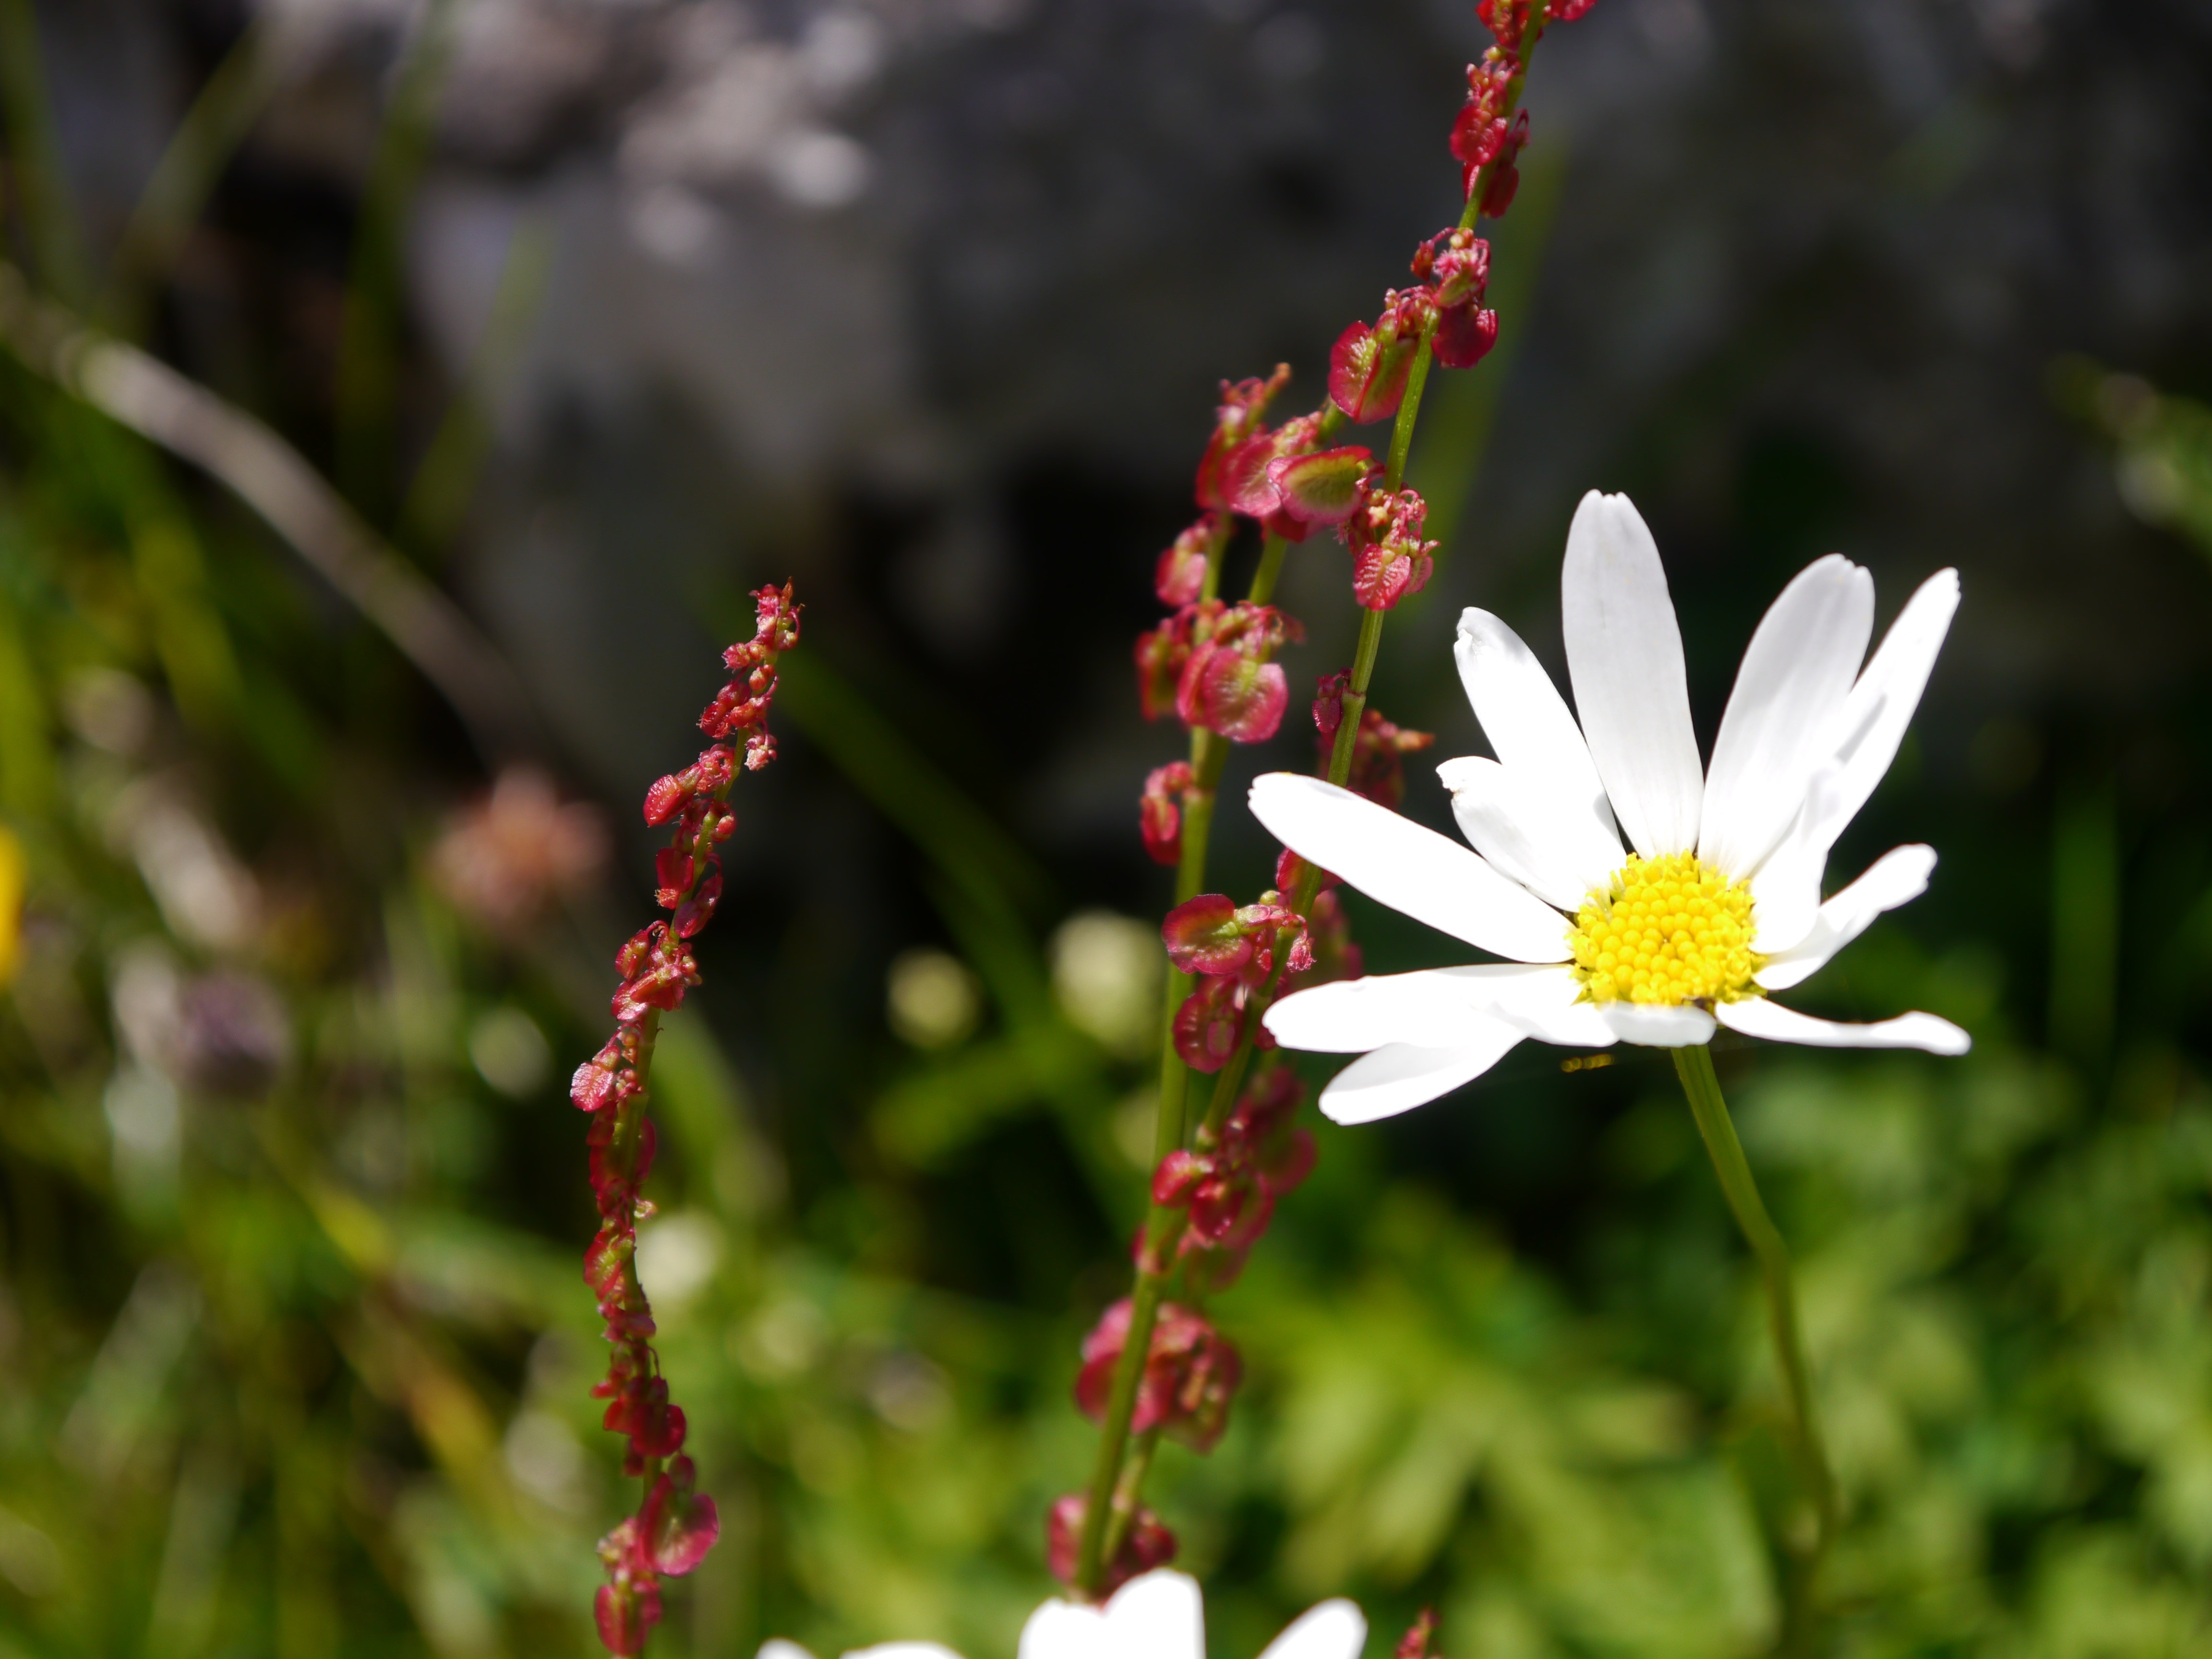 white daisy beside red petaled flower